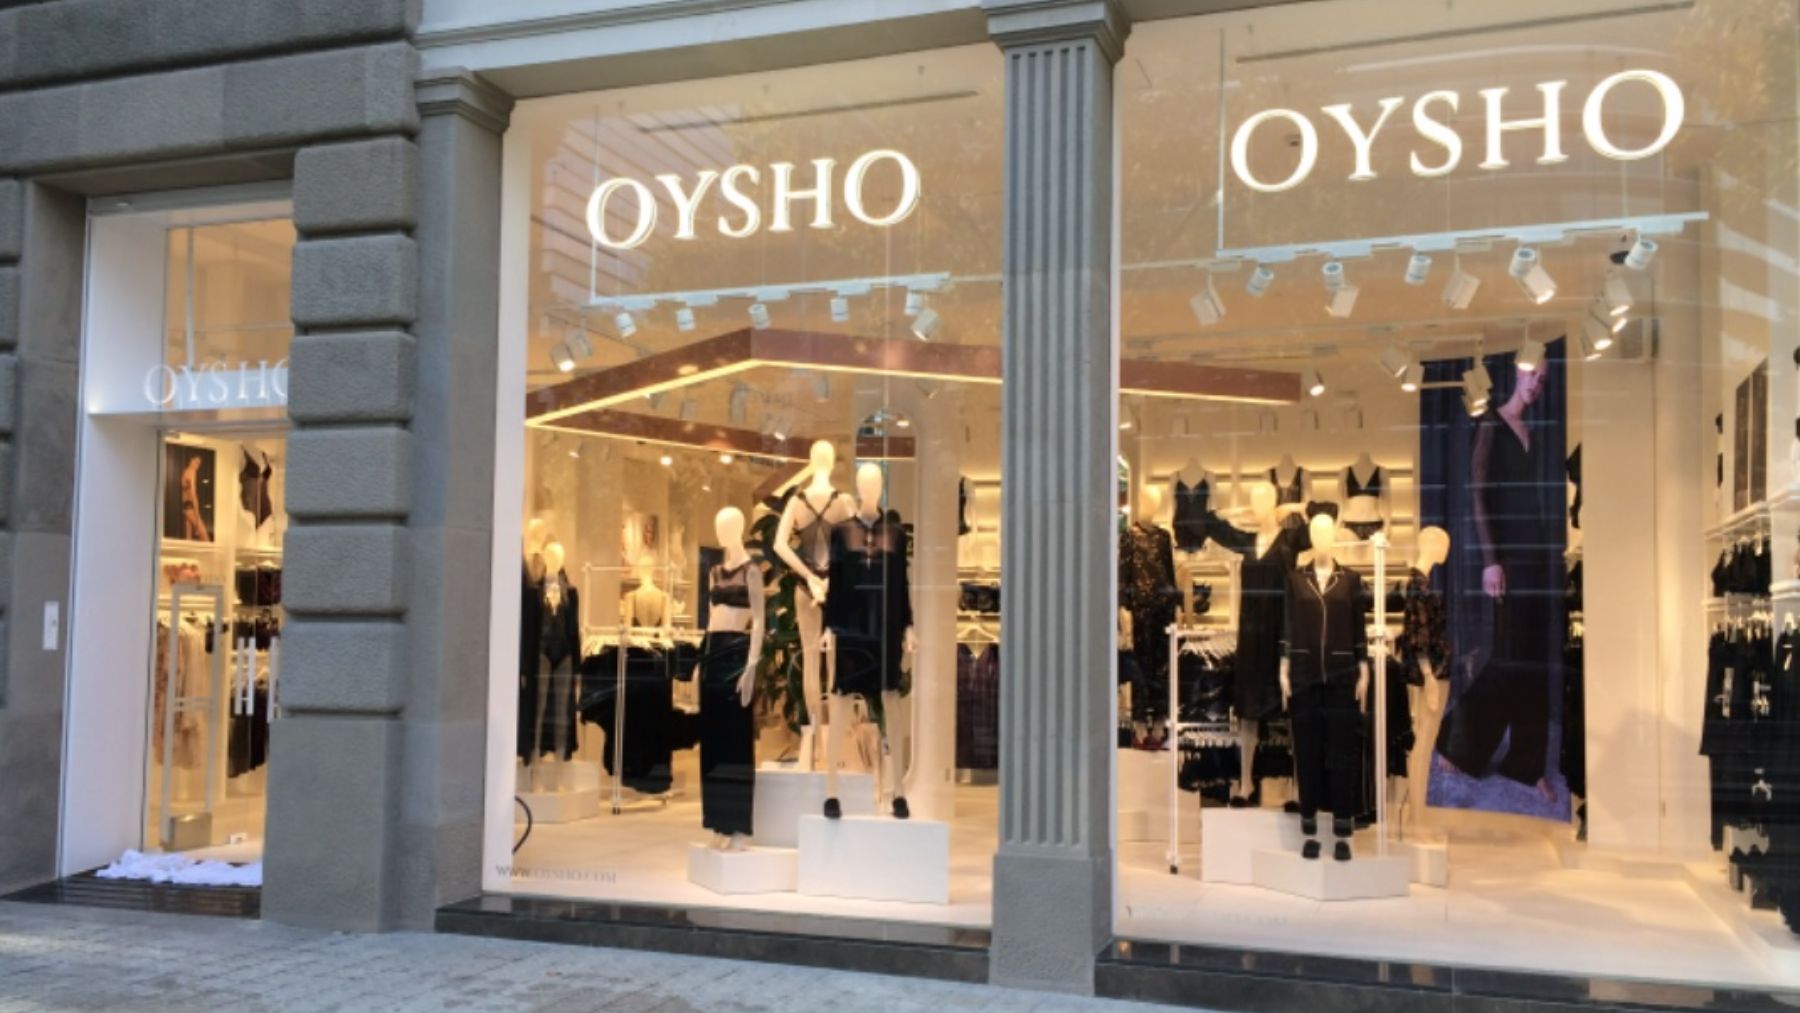 Descubre el producto más sorprendente de Oysho